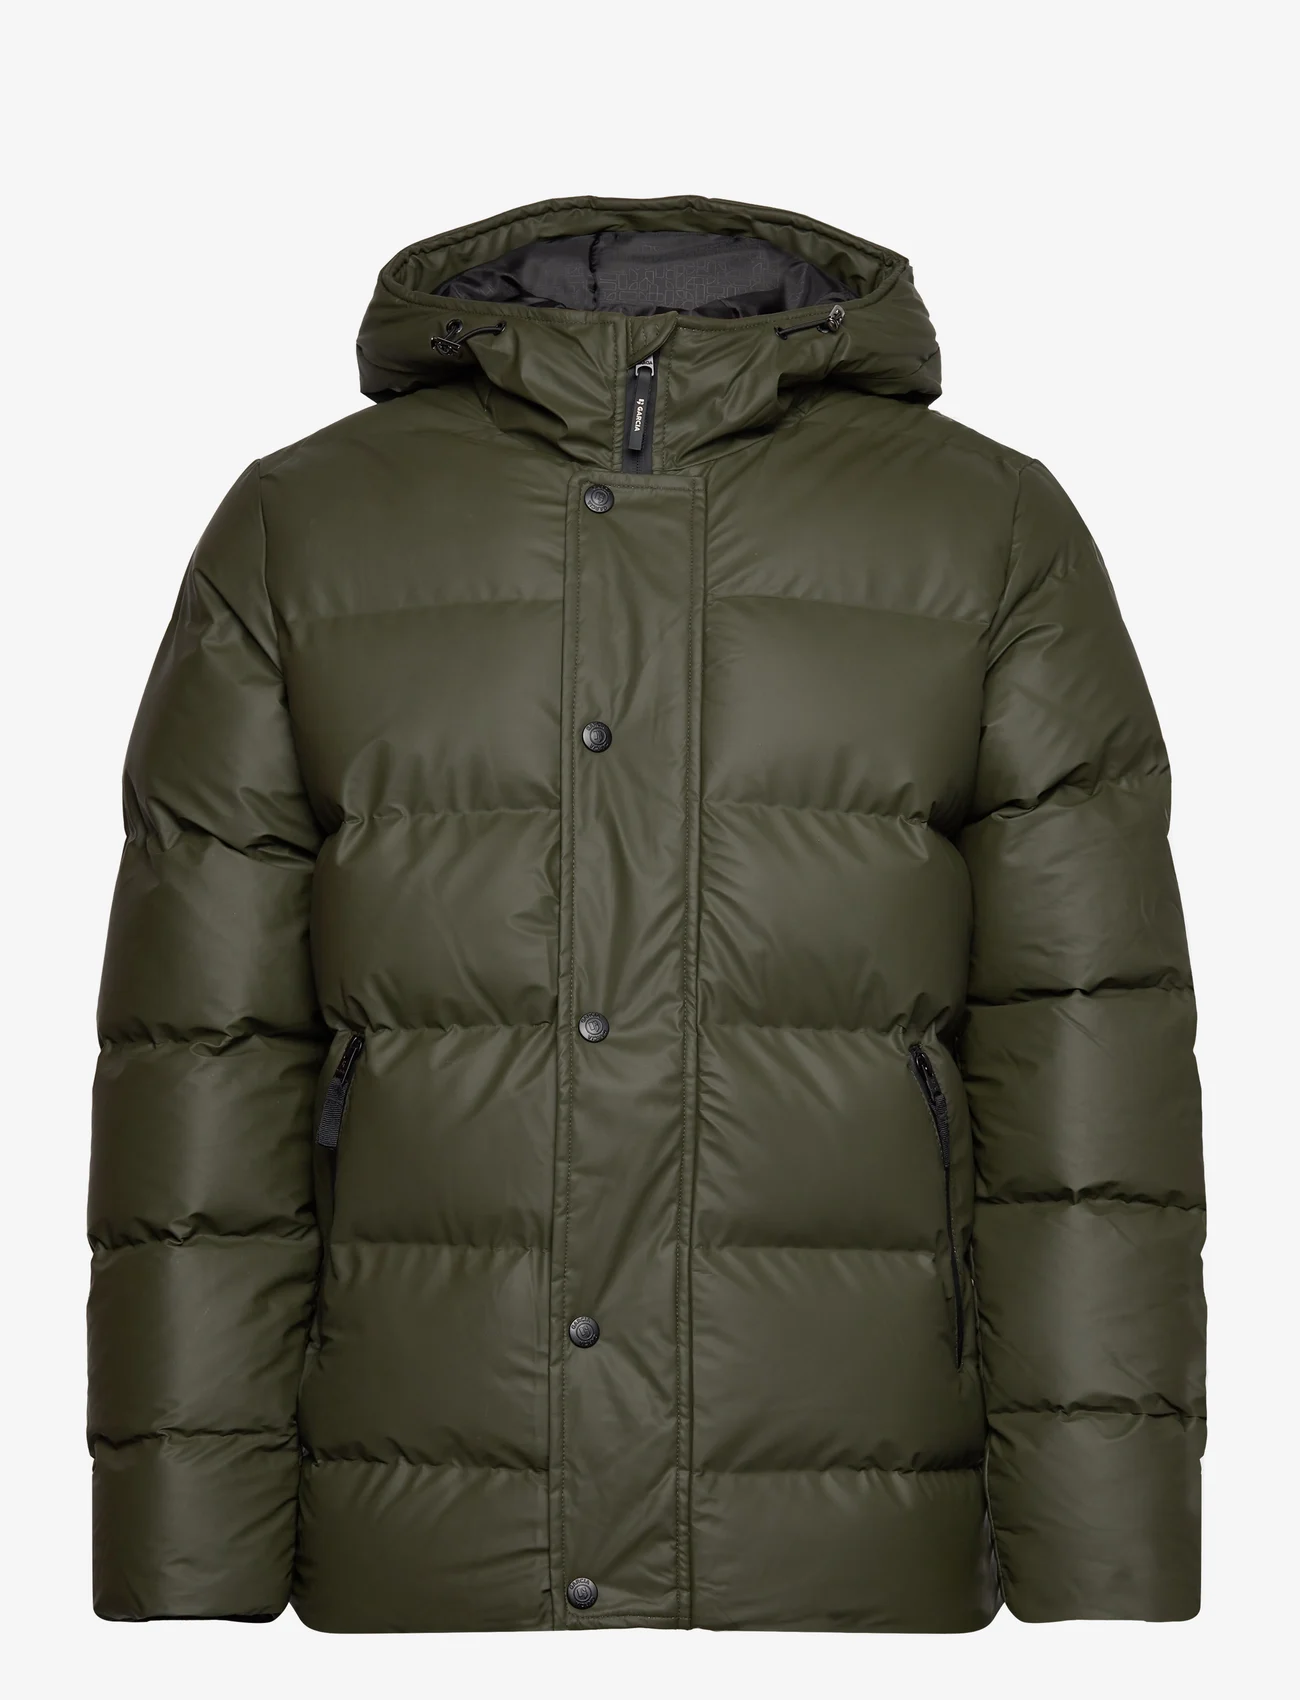 Garcia - men`s outdoor jacket - winterjacken - green - 0